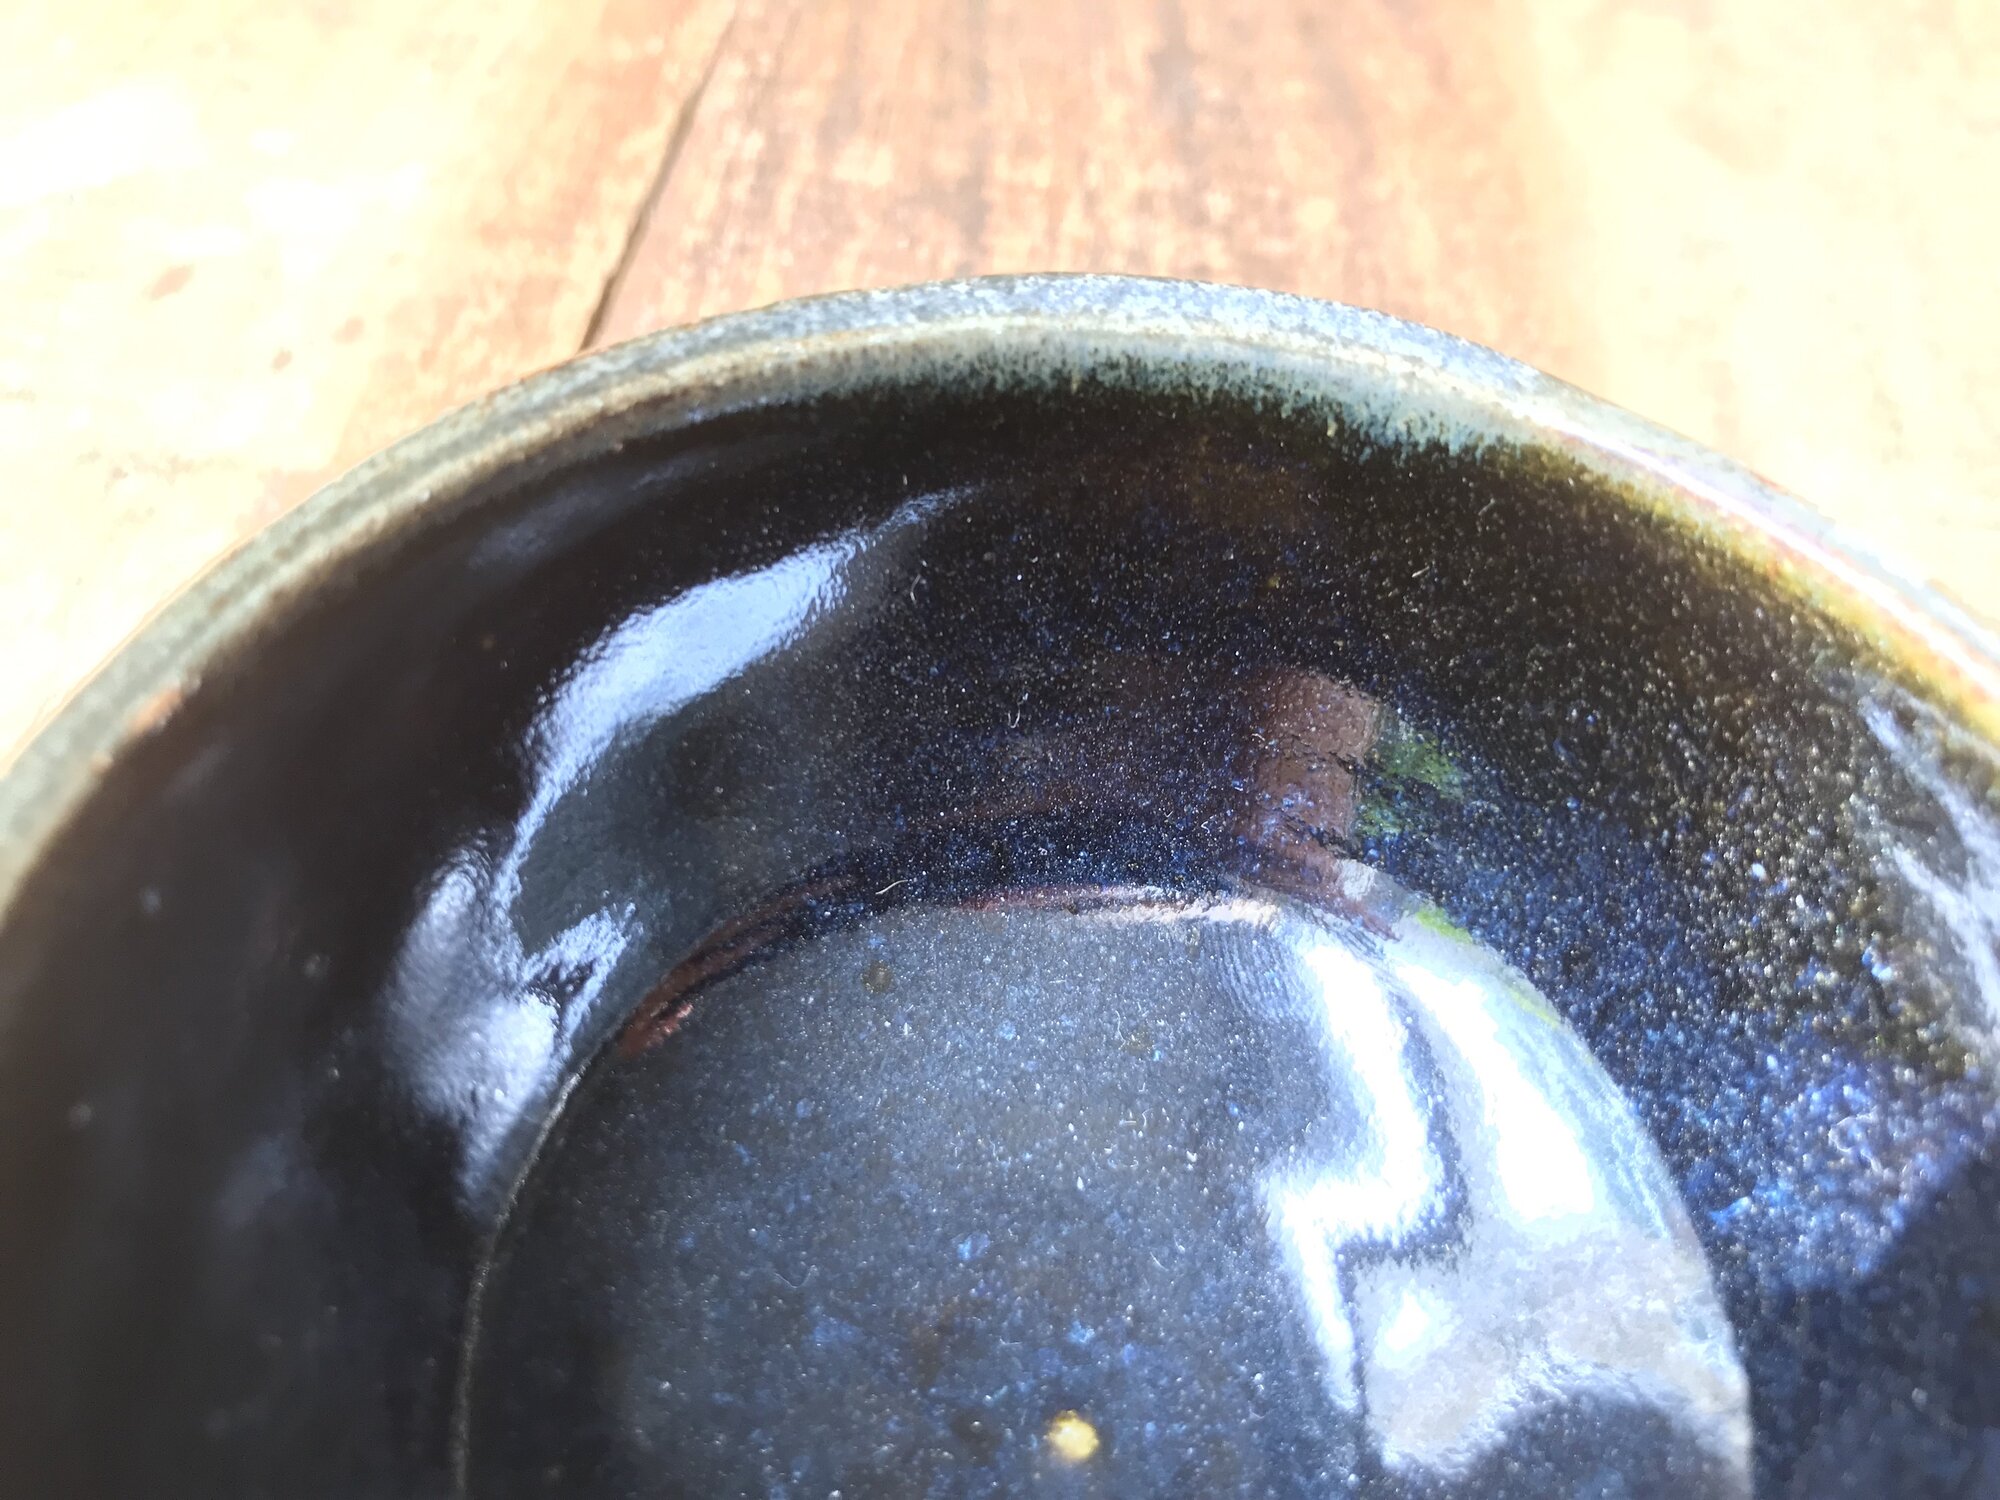 ramen bowl